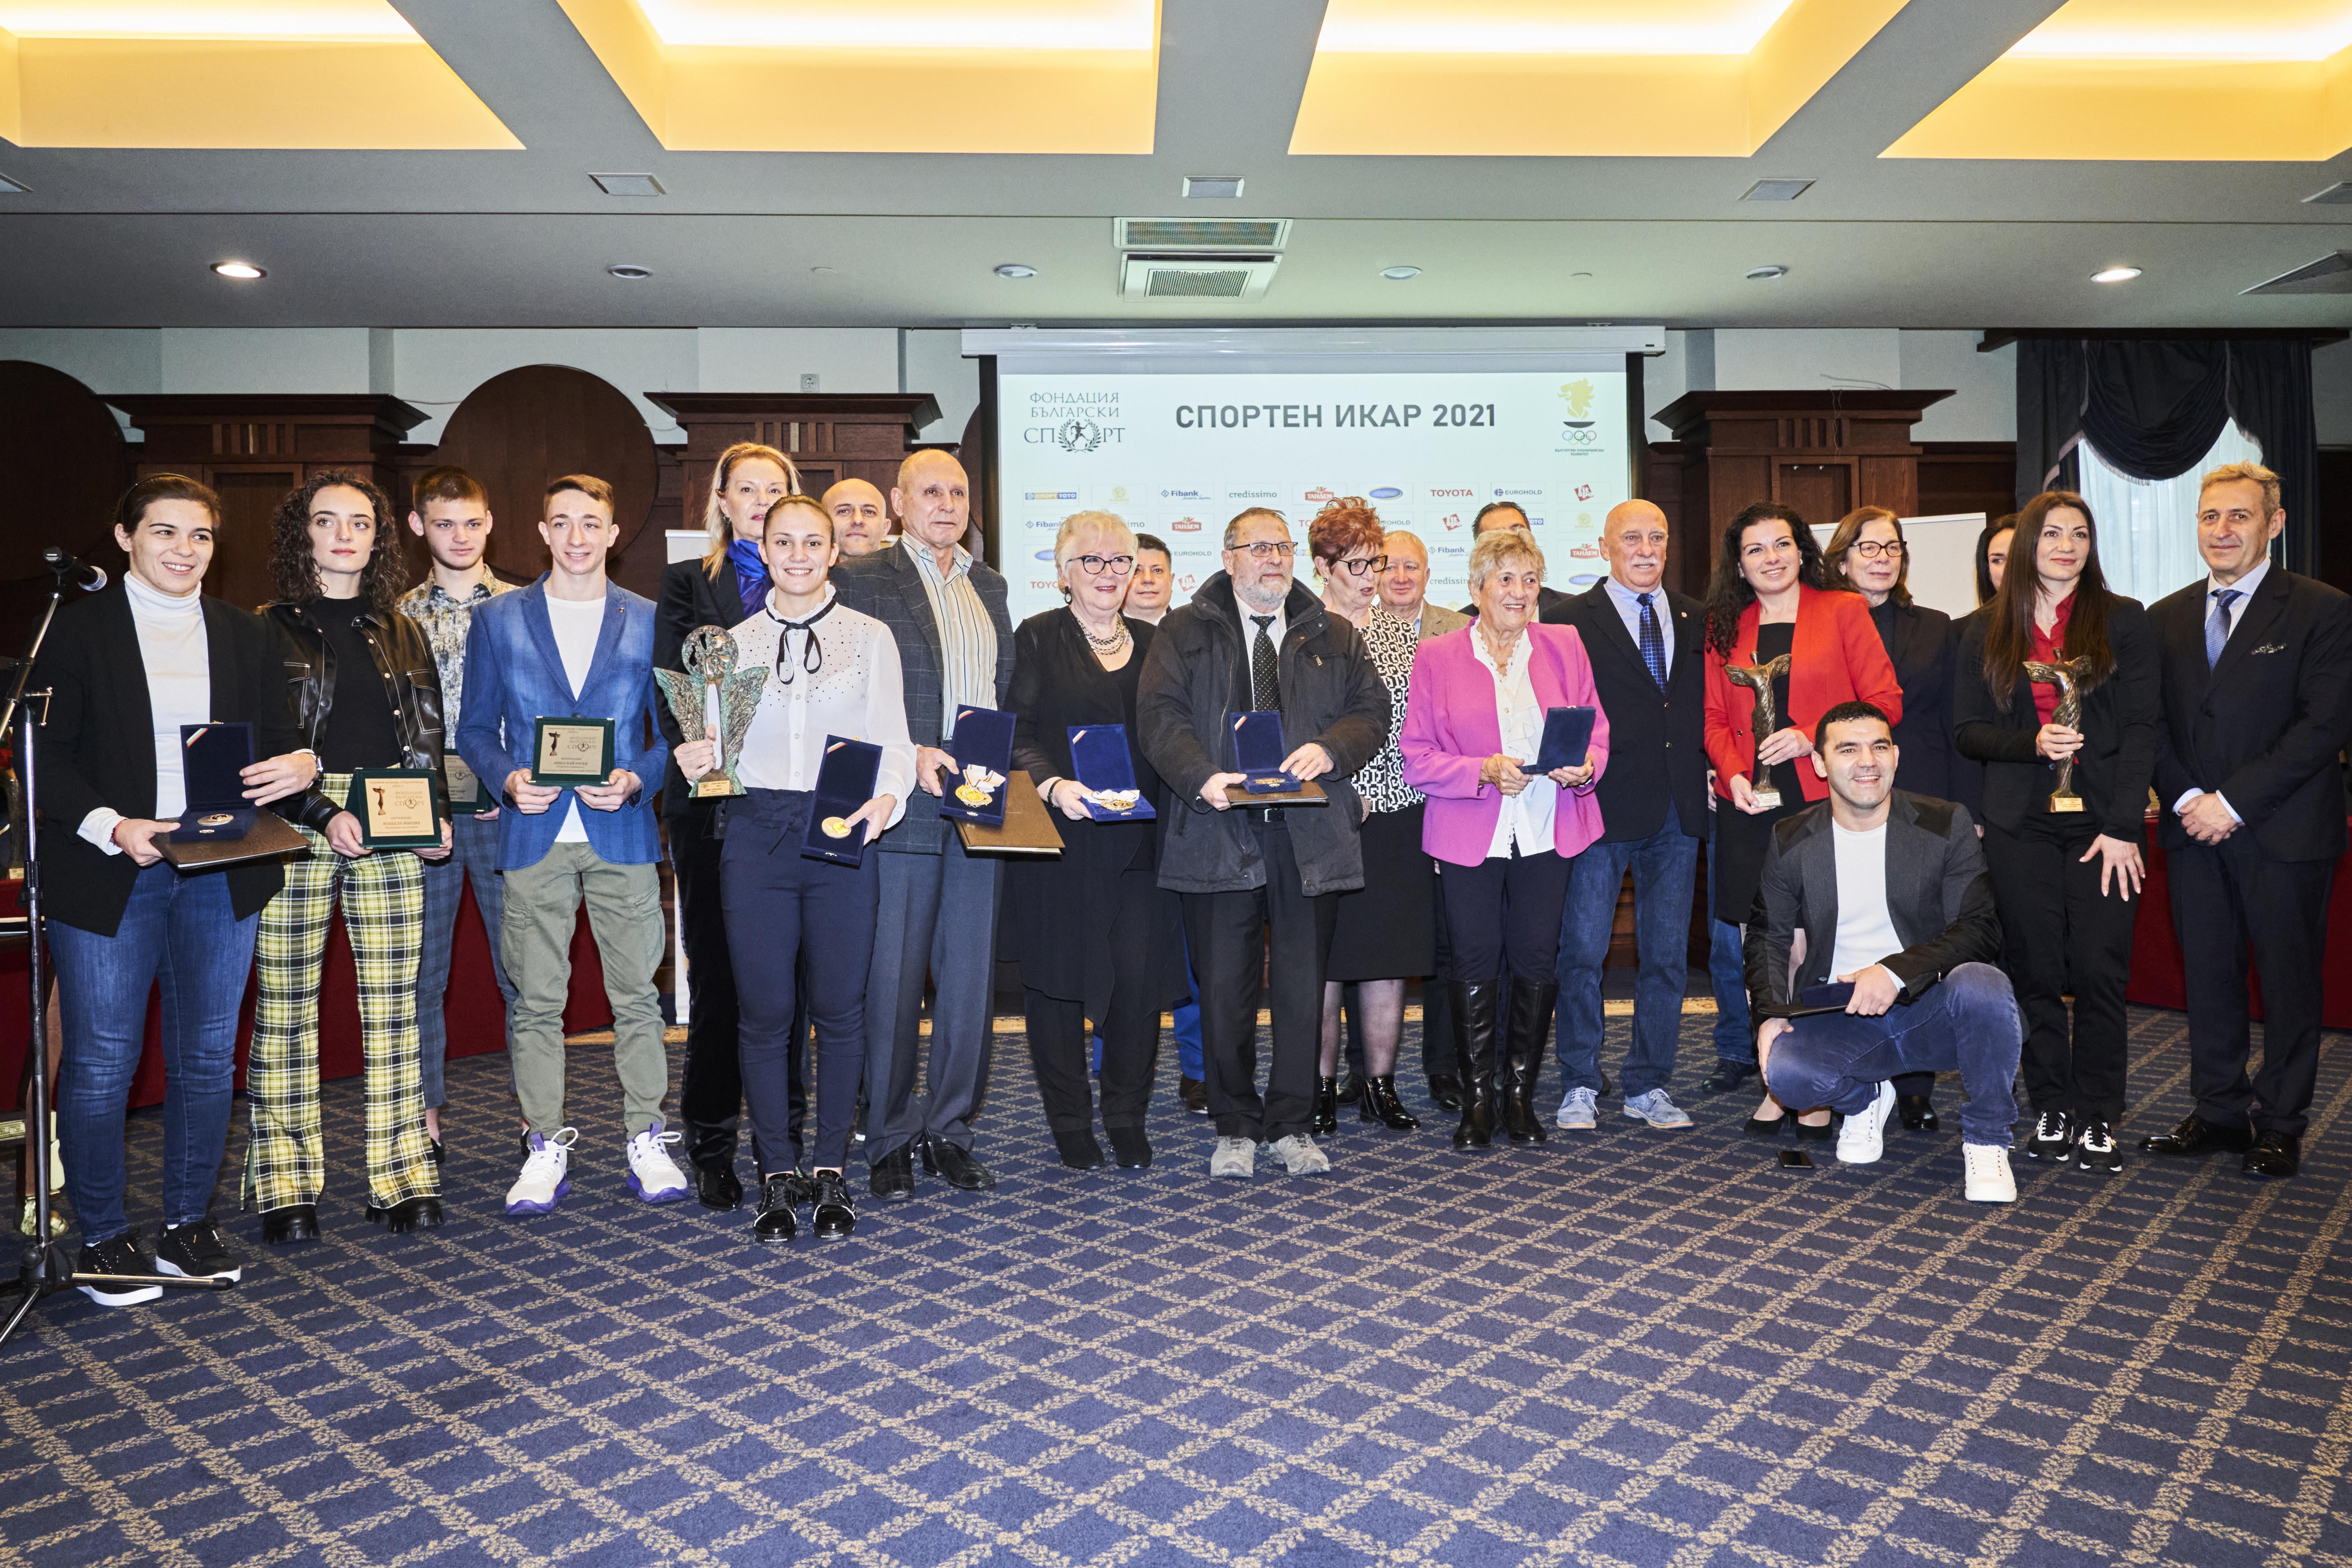 БОК връчи годишните си награди заедно със спортните Икари в София